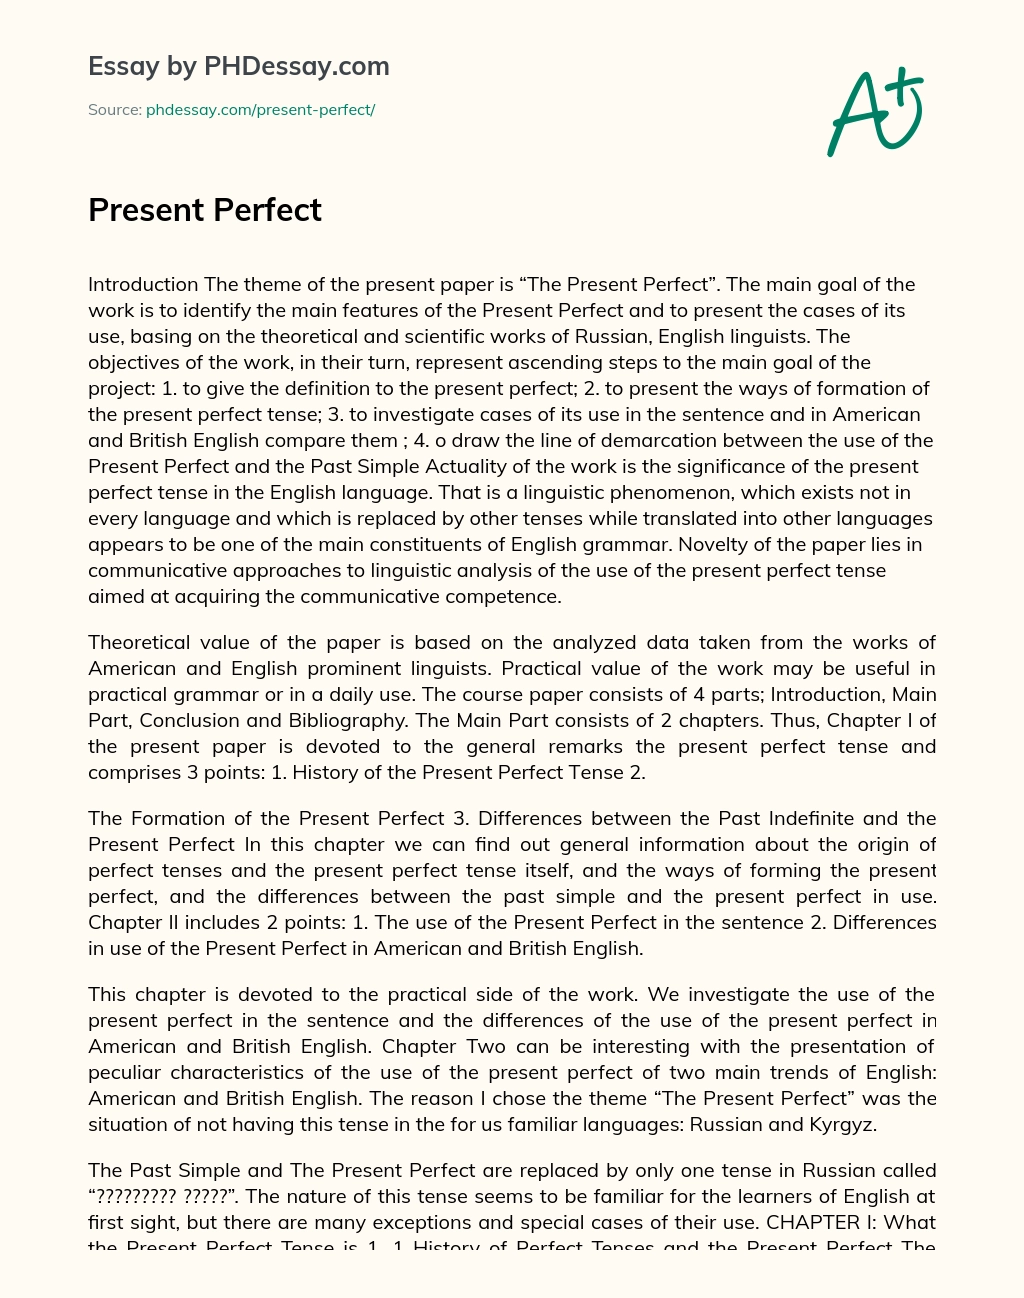 Present Perfect essay